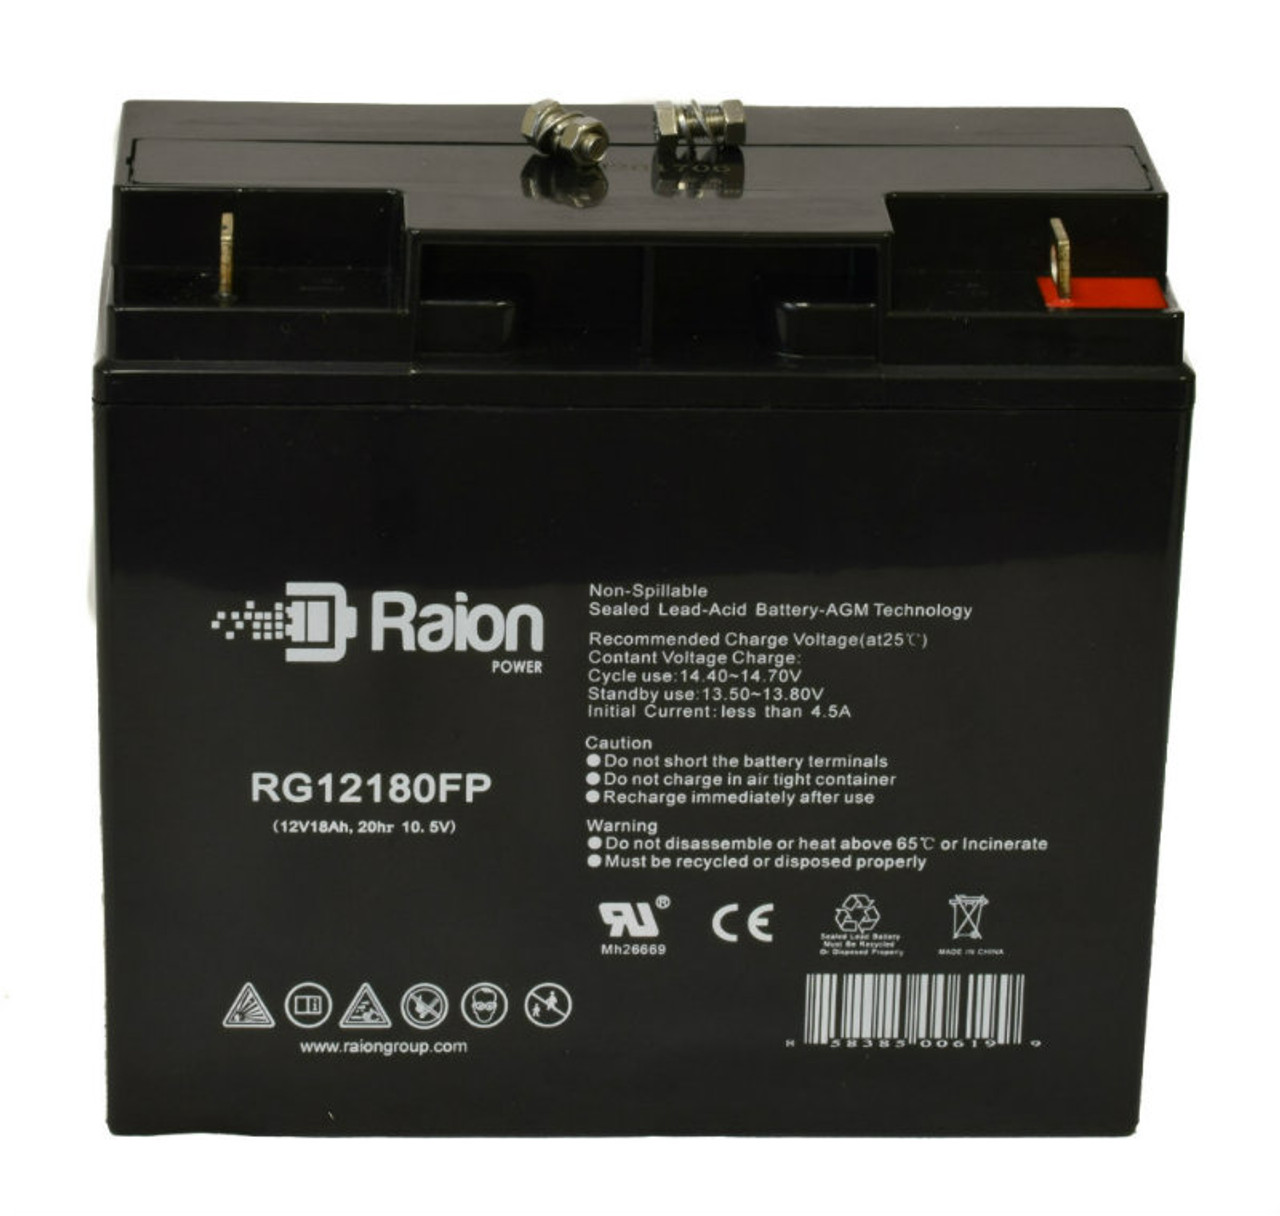 Raion Power RG12180FP 12V 18Ah Lead Acid Battery for Lightalarms OSG12E3 Retrofit